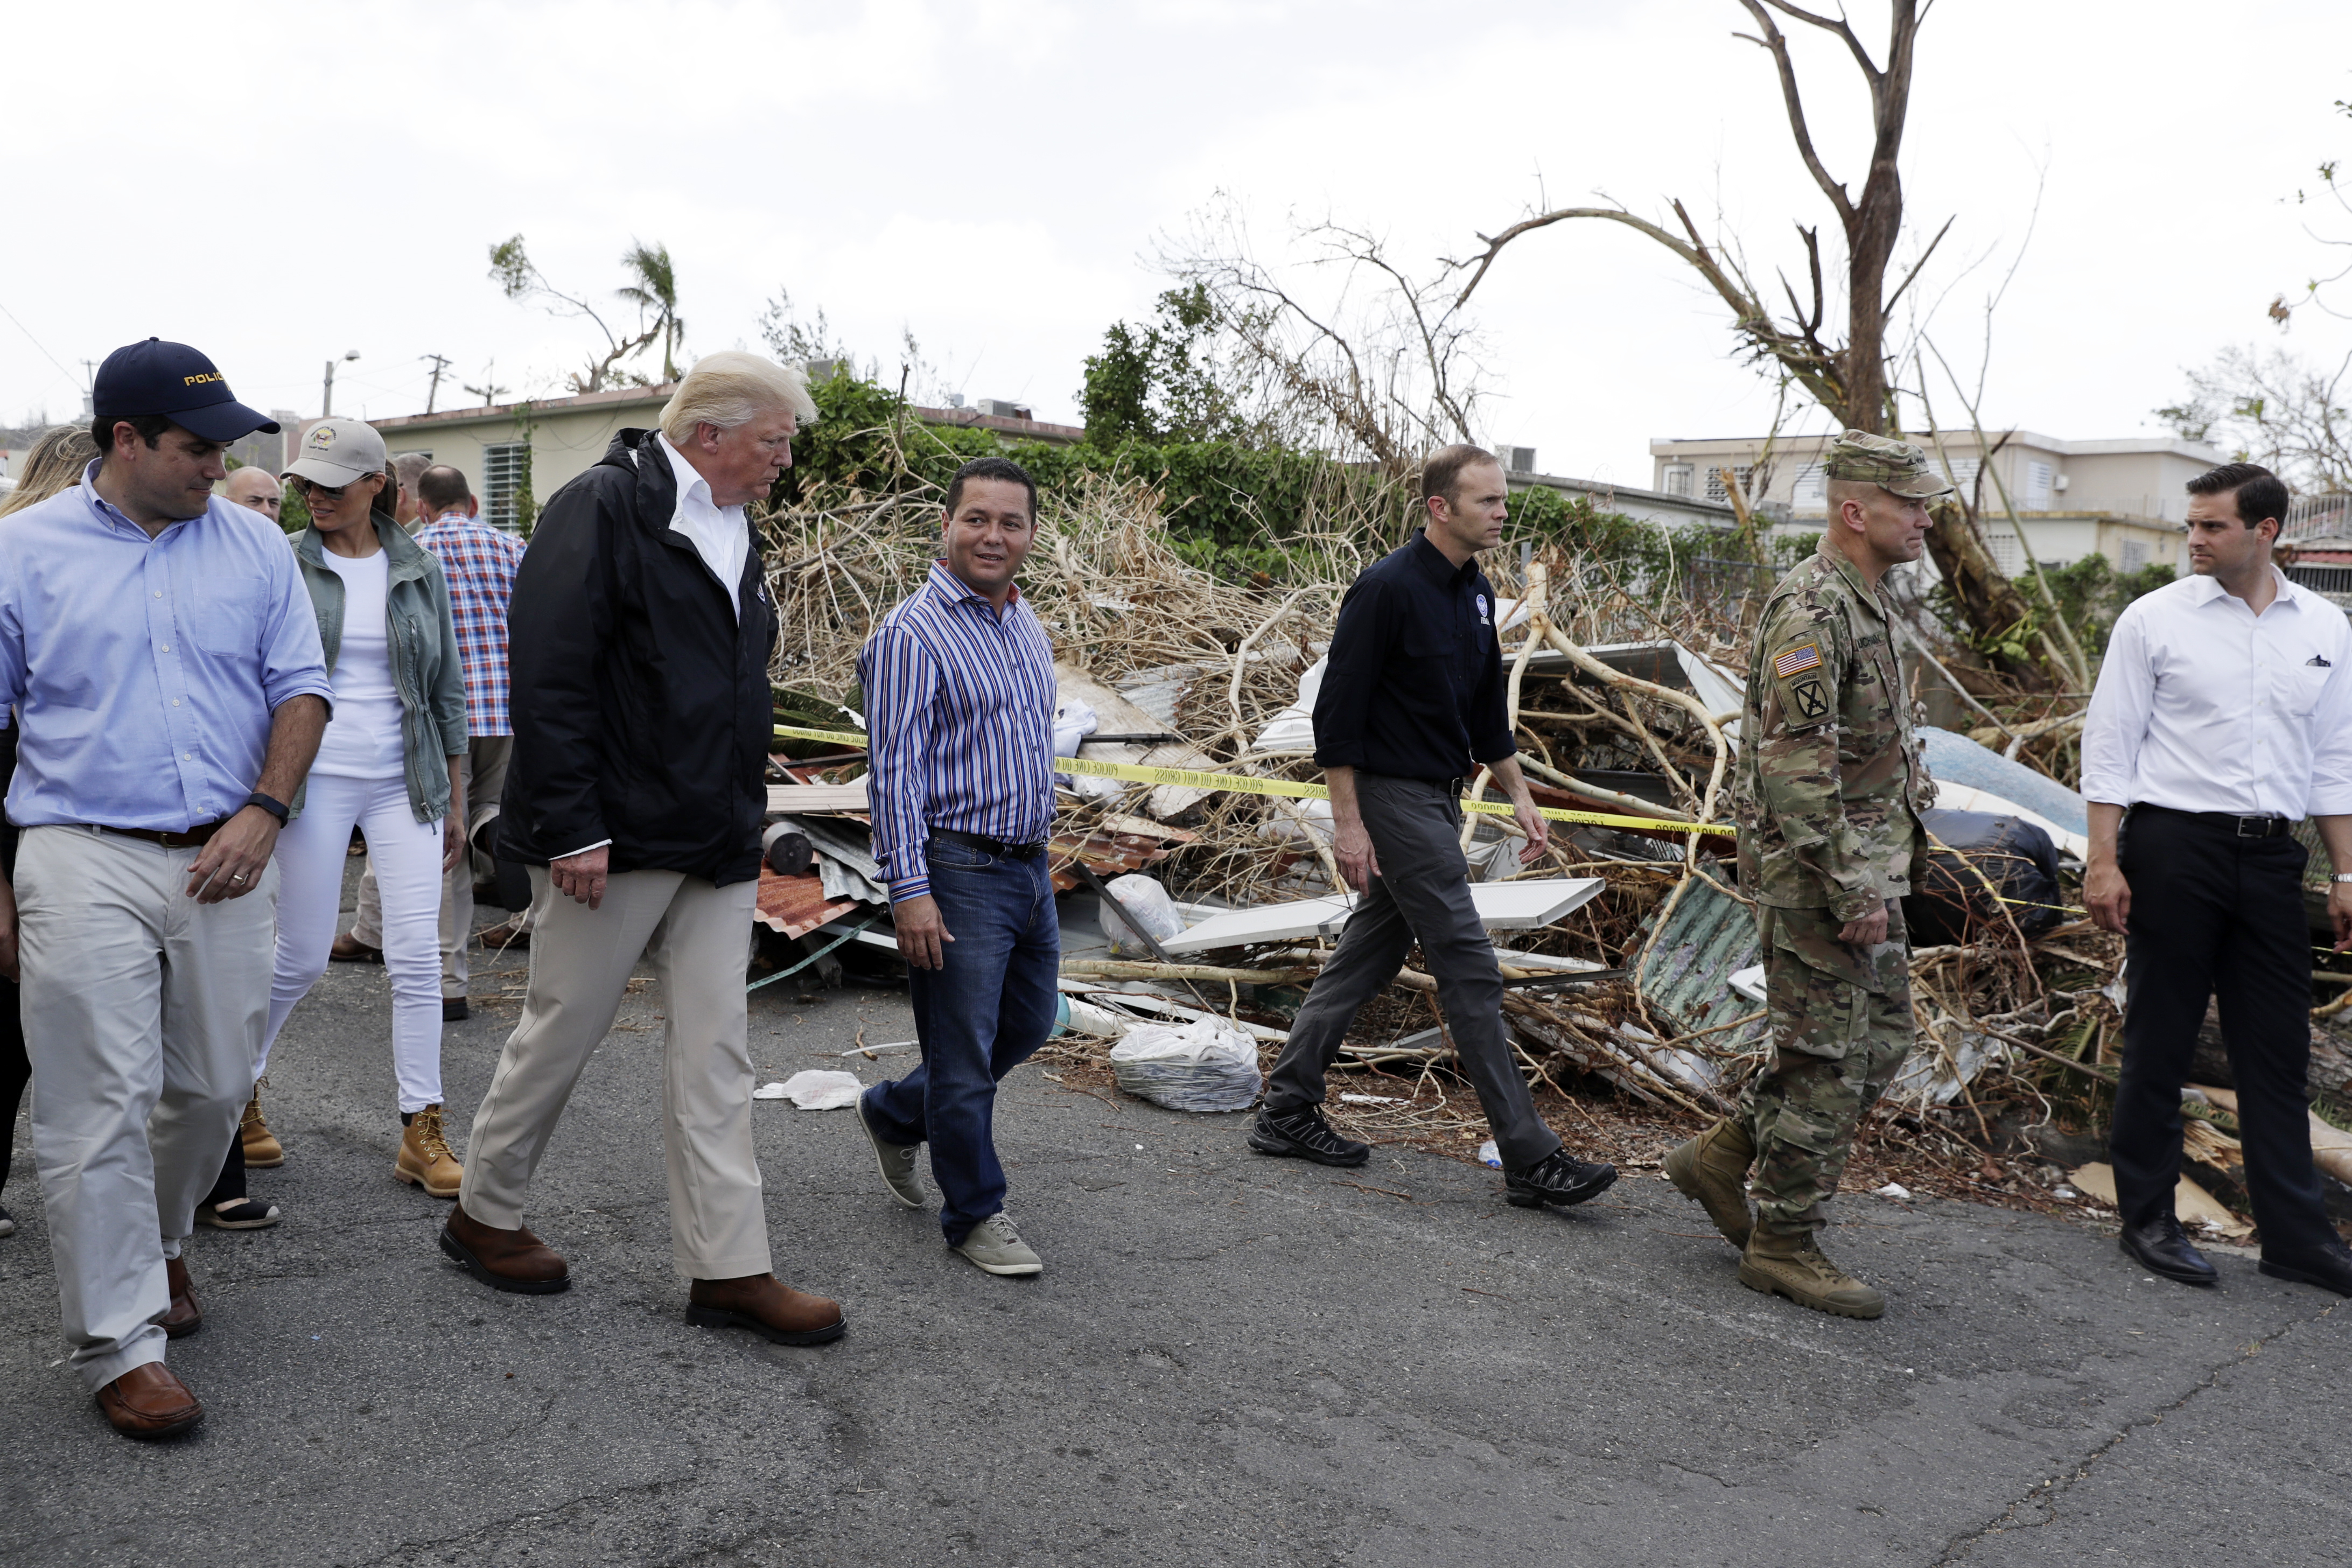 Trump: Puerto Rico no sufre "catástrofe real" como la del huracán Katrina